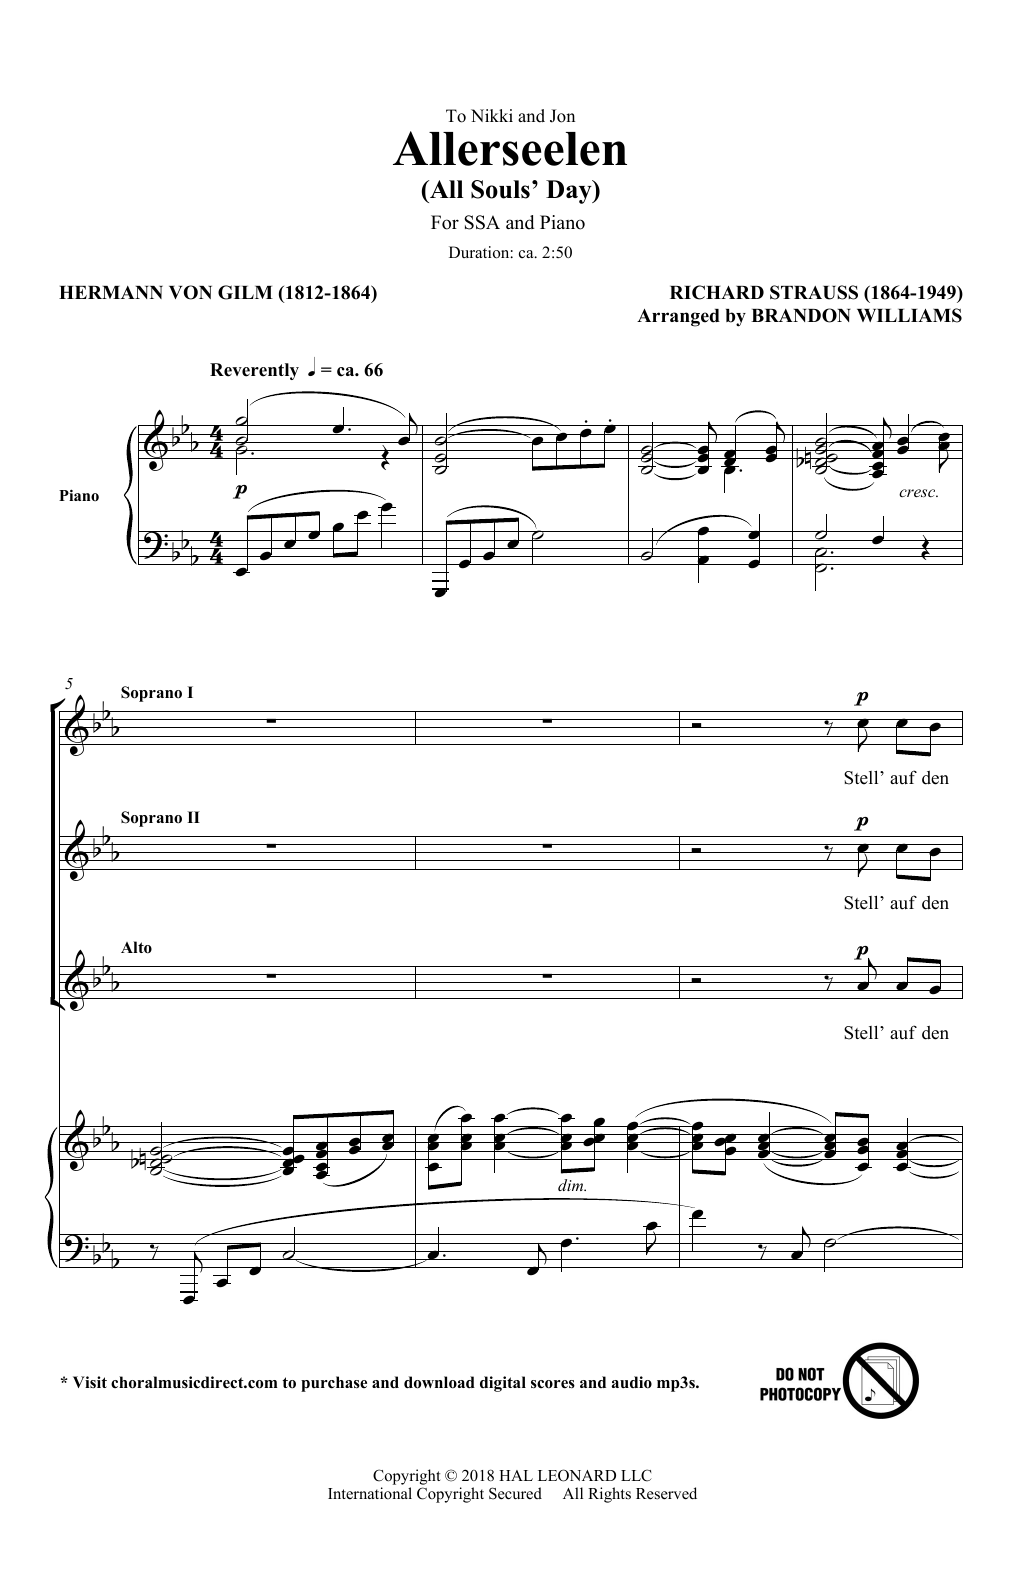 Richard Strauss & Hermann von Gilm Allerseelen (arr. Brandon Williams) sheet music notes and chords arranged for SSA Choir